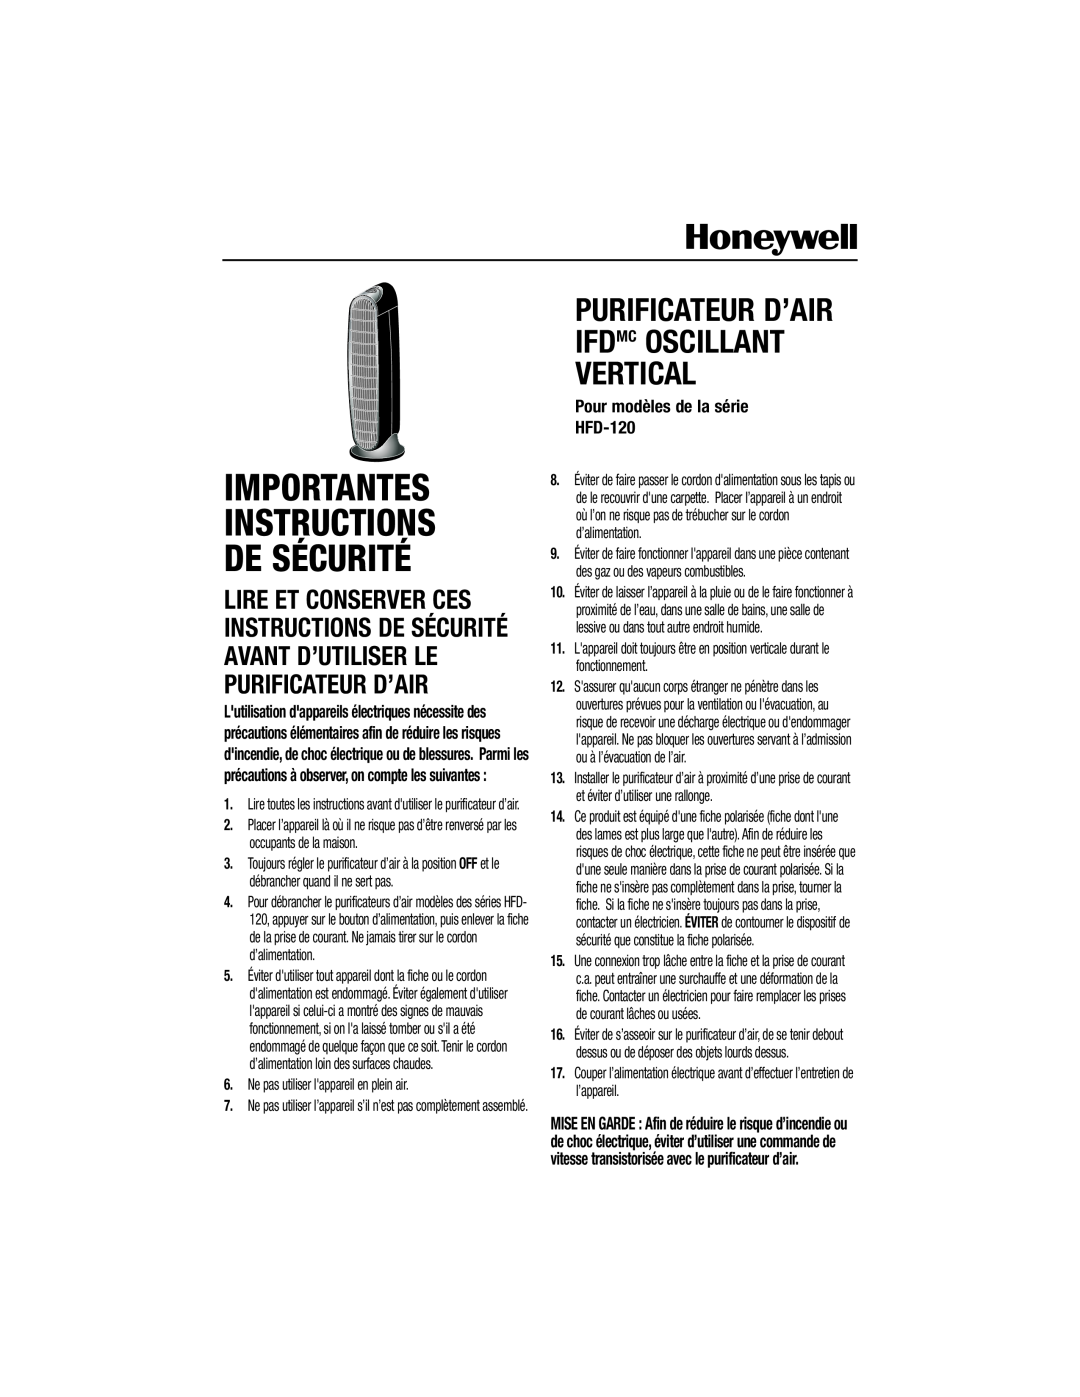 Honeywell important safety instructions Importantes Instructions De Sécurité, Pour modèles de la série HFD-120 